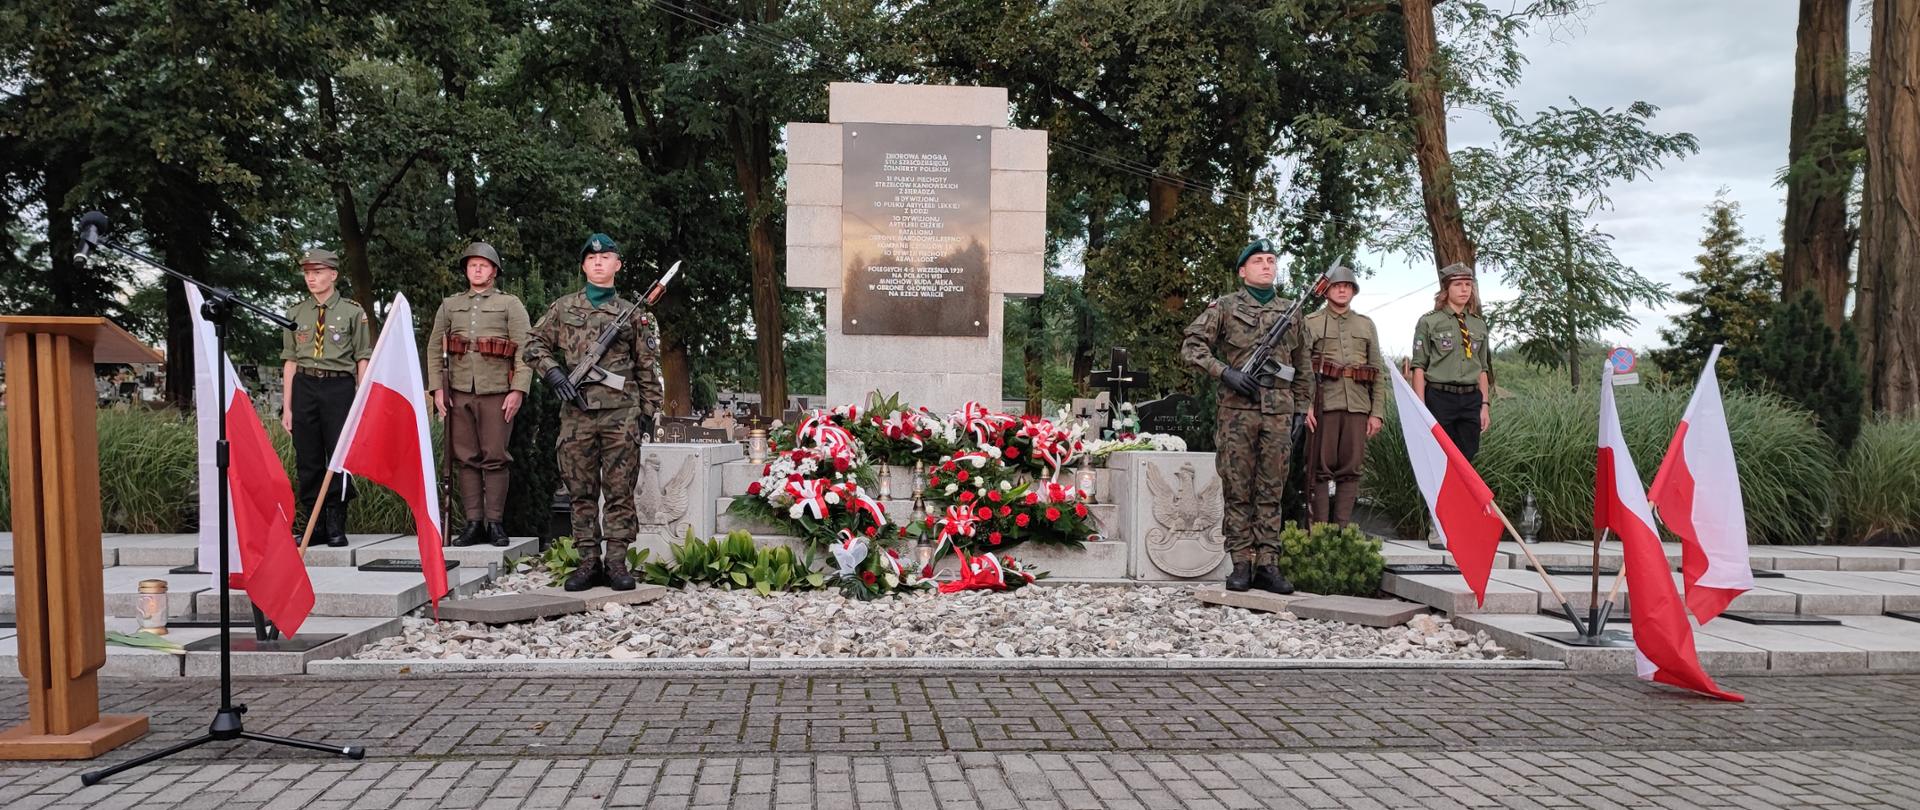 Warta honorowa wystawiona przez żołnierzy 15 Sieradzkiej Brygady Wsparcia Dowodzenia, ZHP oraz grupę rekonstrukcyjną przy tablicy upamiętniającej żołnierzy poległych podczas kampanii wrześniowej 1939 r. w 82 rocznicę wybuchu II wojny światowej.